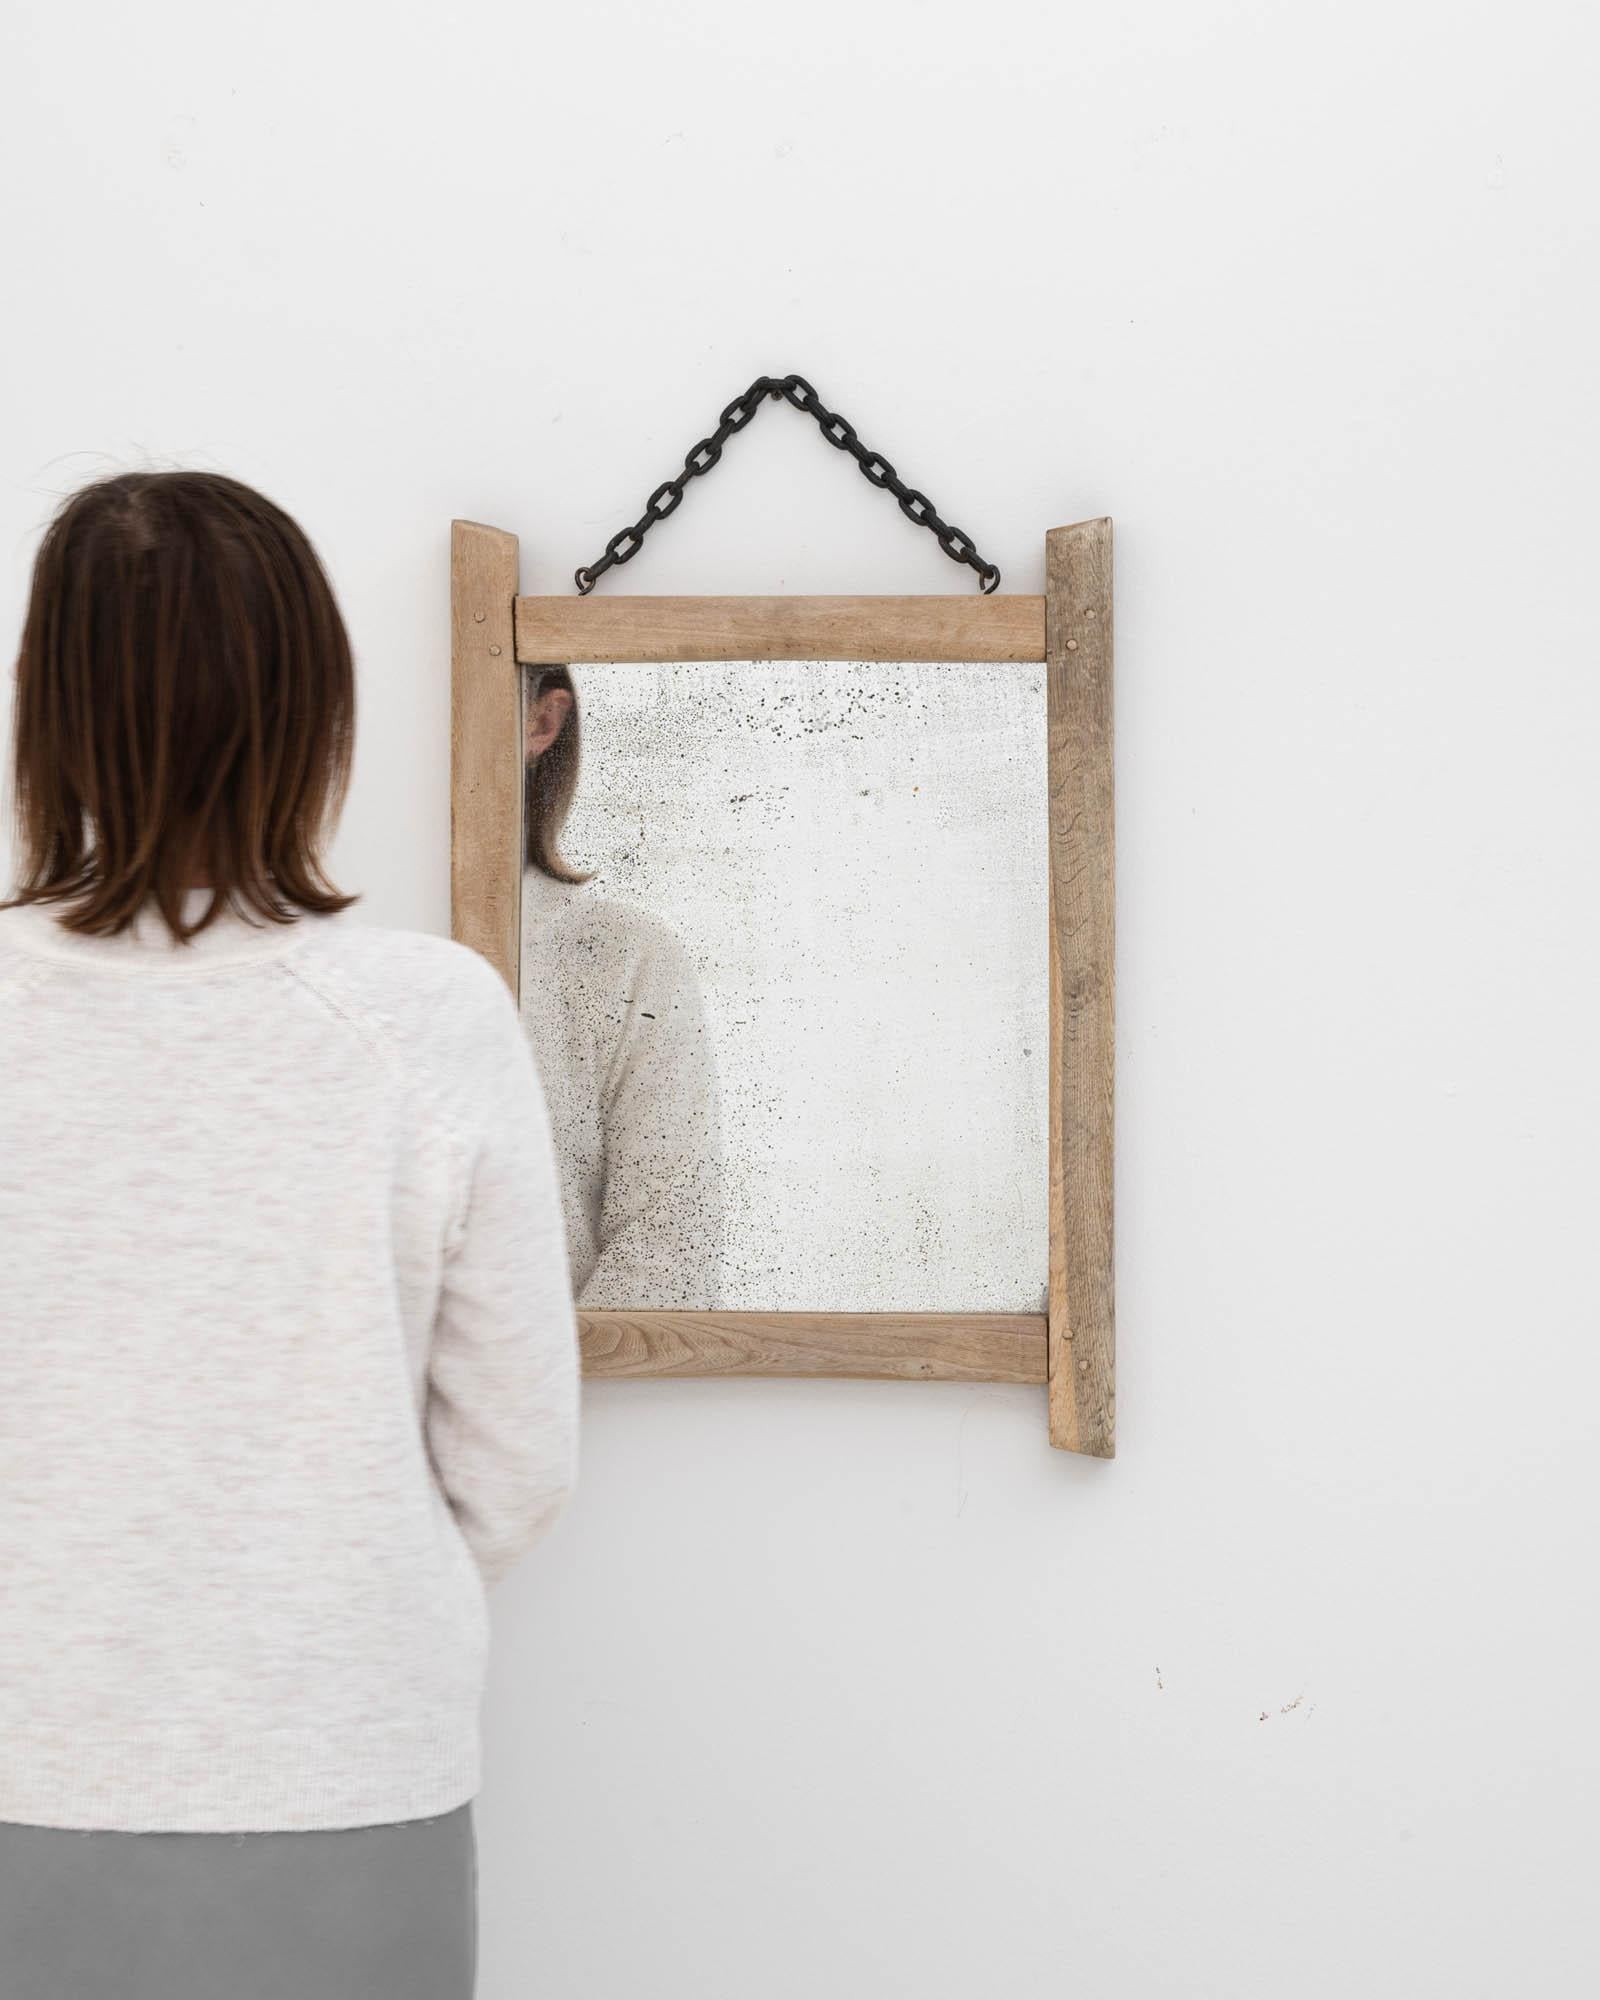 Ce miroir en chêne blanchi belge du 20e siècle est une pièce minimaliste et sereine qui capture l'essence du charme rustique. Le cadre en bois clair et délavé, patiné par le temps, apporte une sensation de légèreté à tout espace, tandis que la